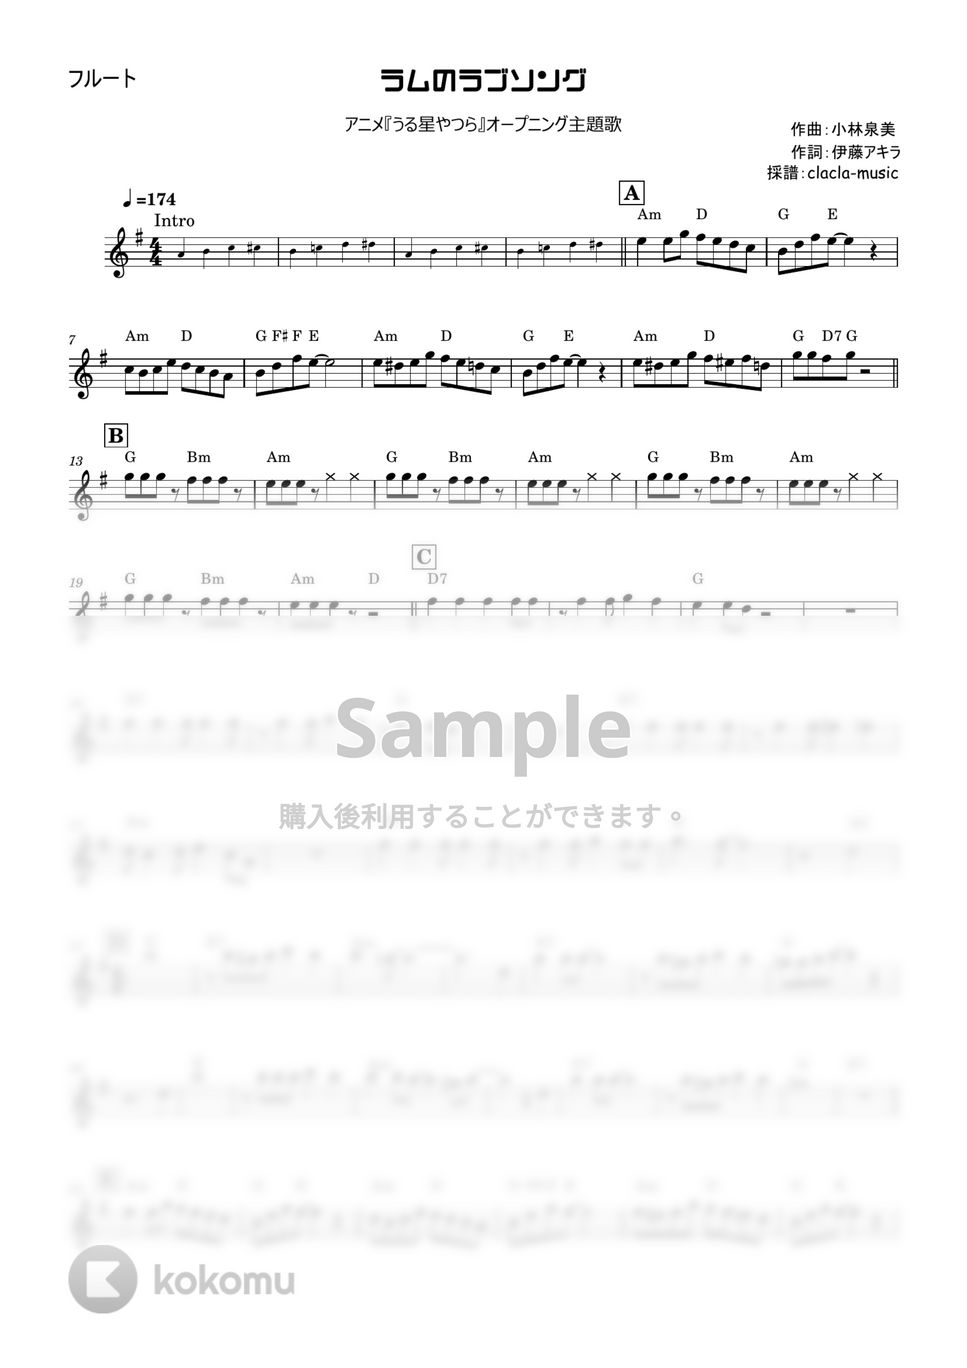 松谷祐子 - ラムのラブソング (うる星やつら、フルート、オーボエ、ヴァイオリン) by clacla-music